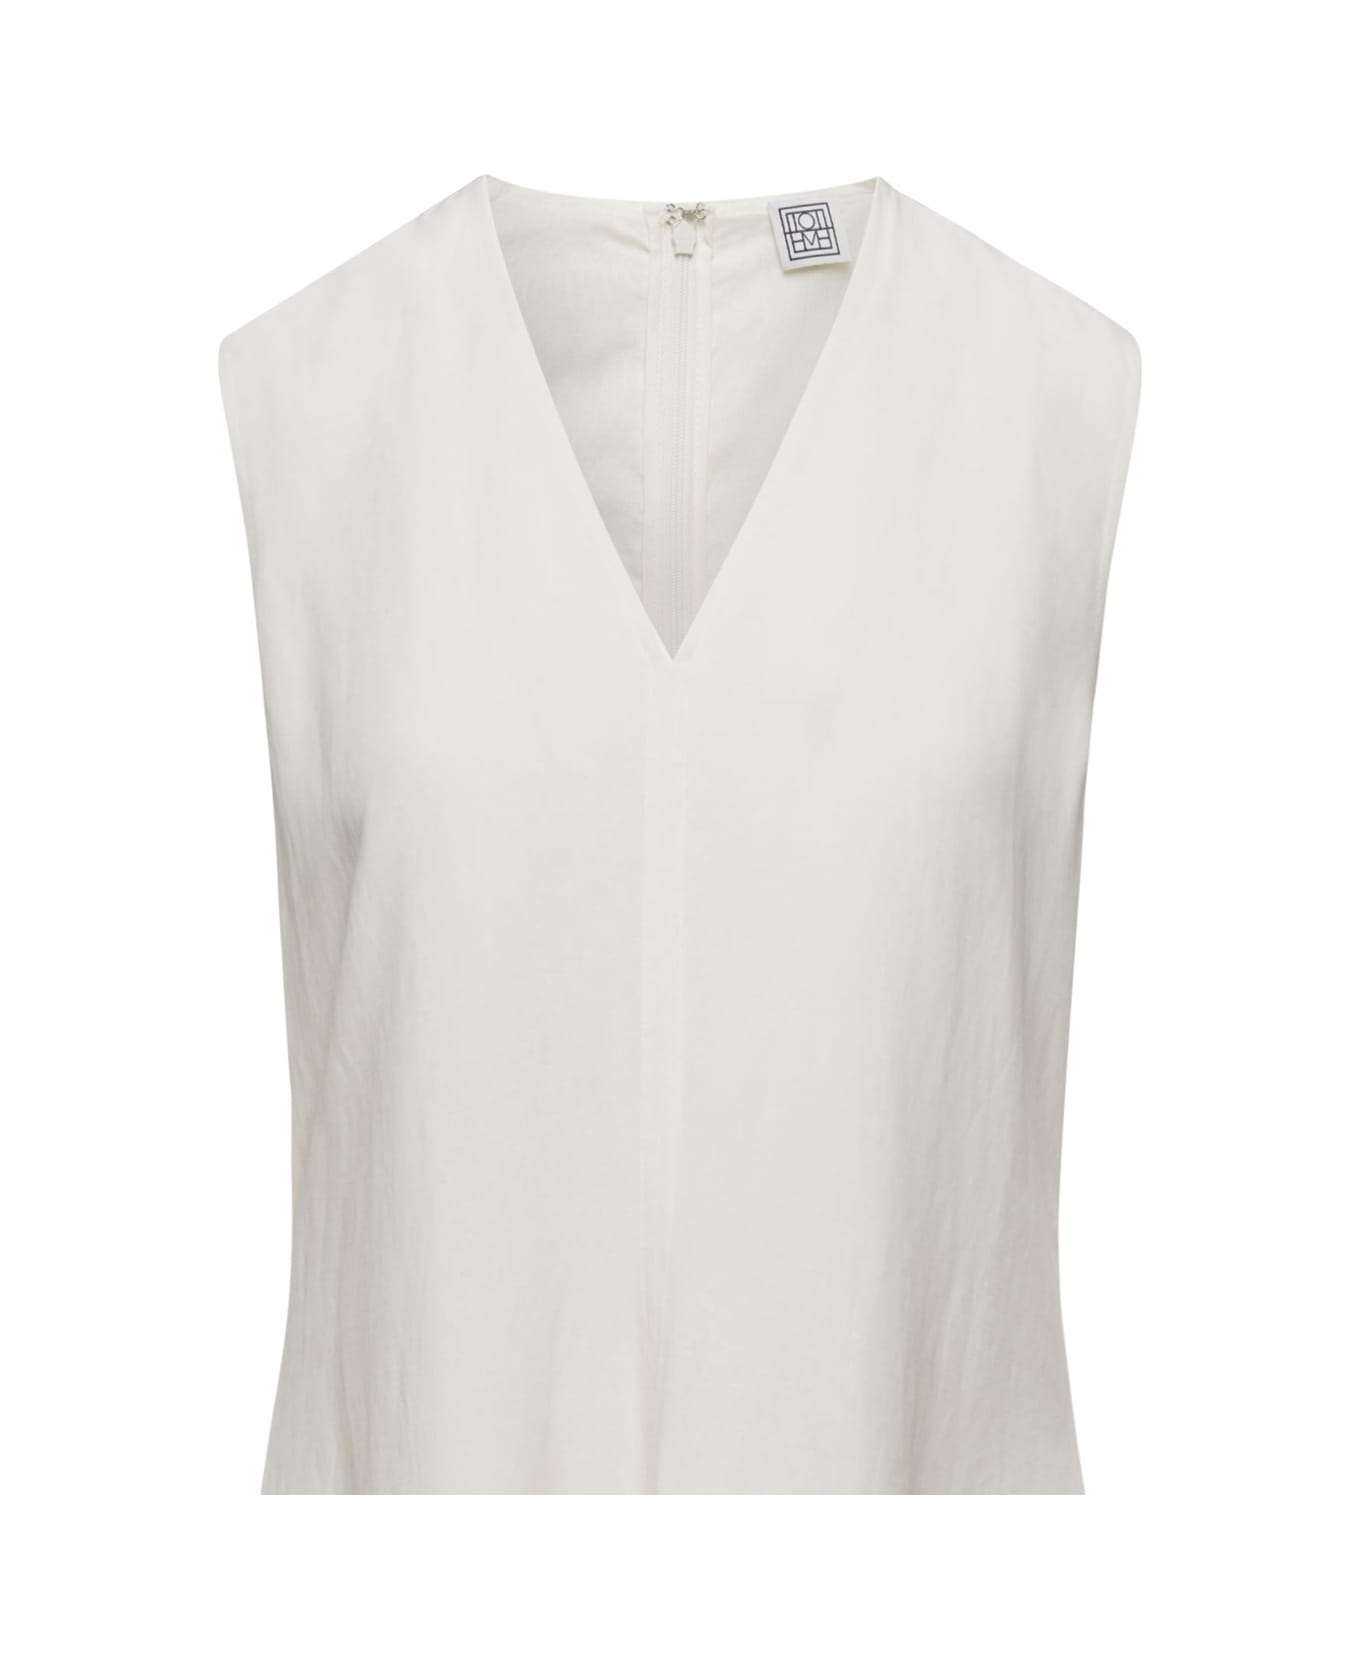 Totême White V-neck Flared Dress In Linen Blend Woman - White